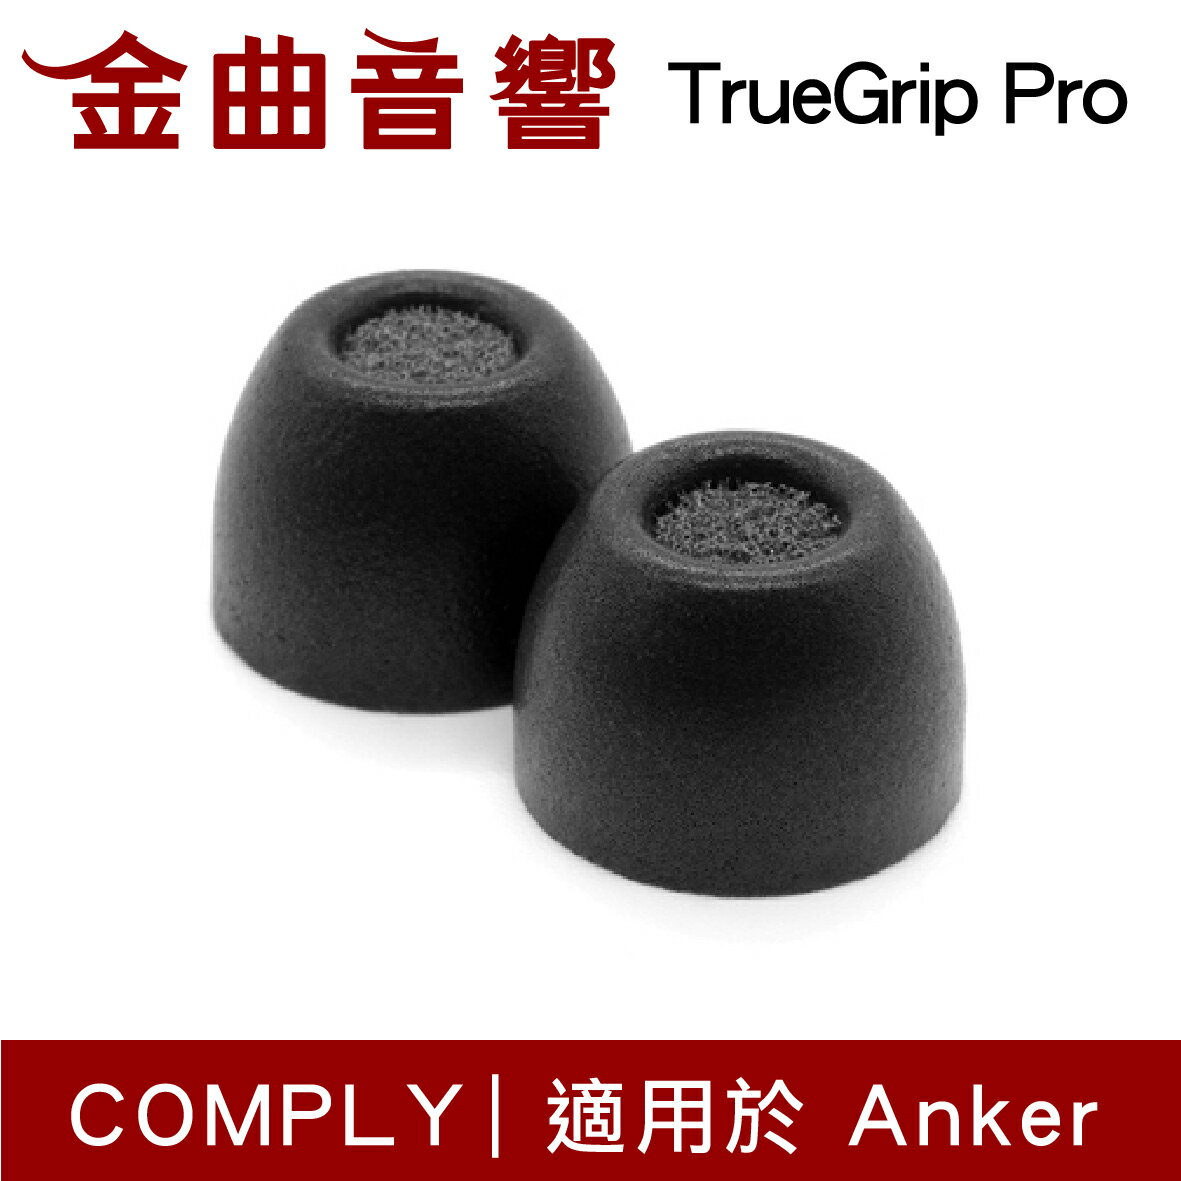 【點數 9%】 Comply TrueGrip™Pro Anker SoundCore 耳機 海綿 耳塞 | 金曲音響